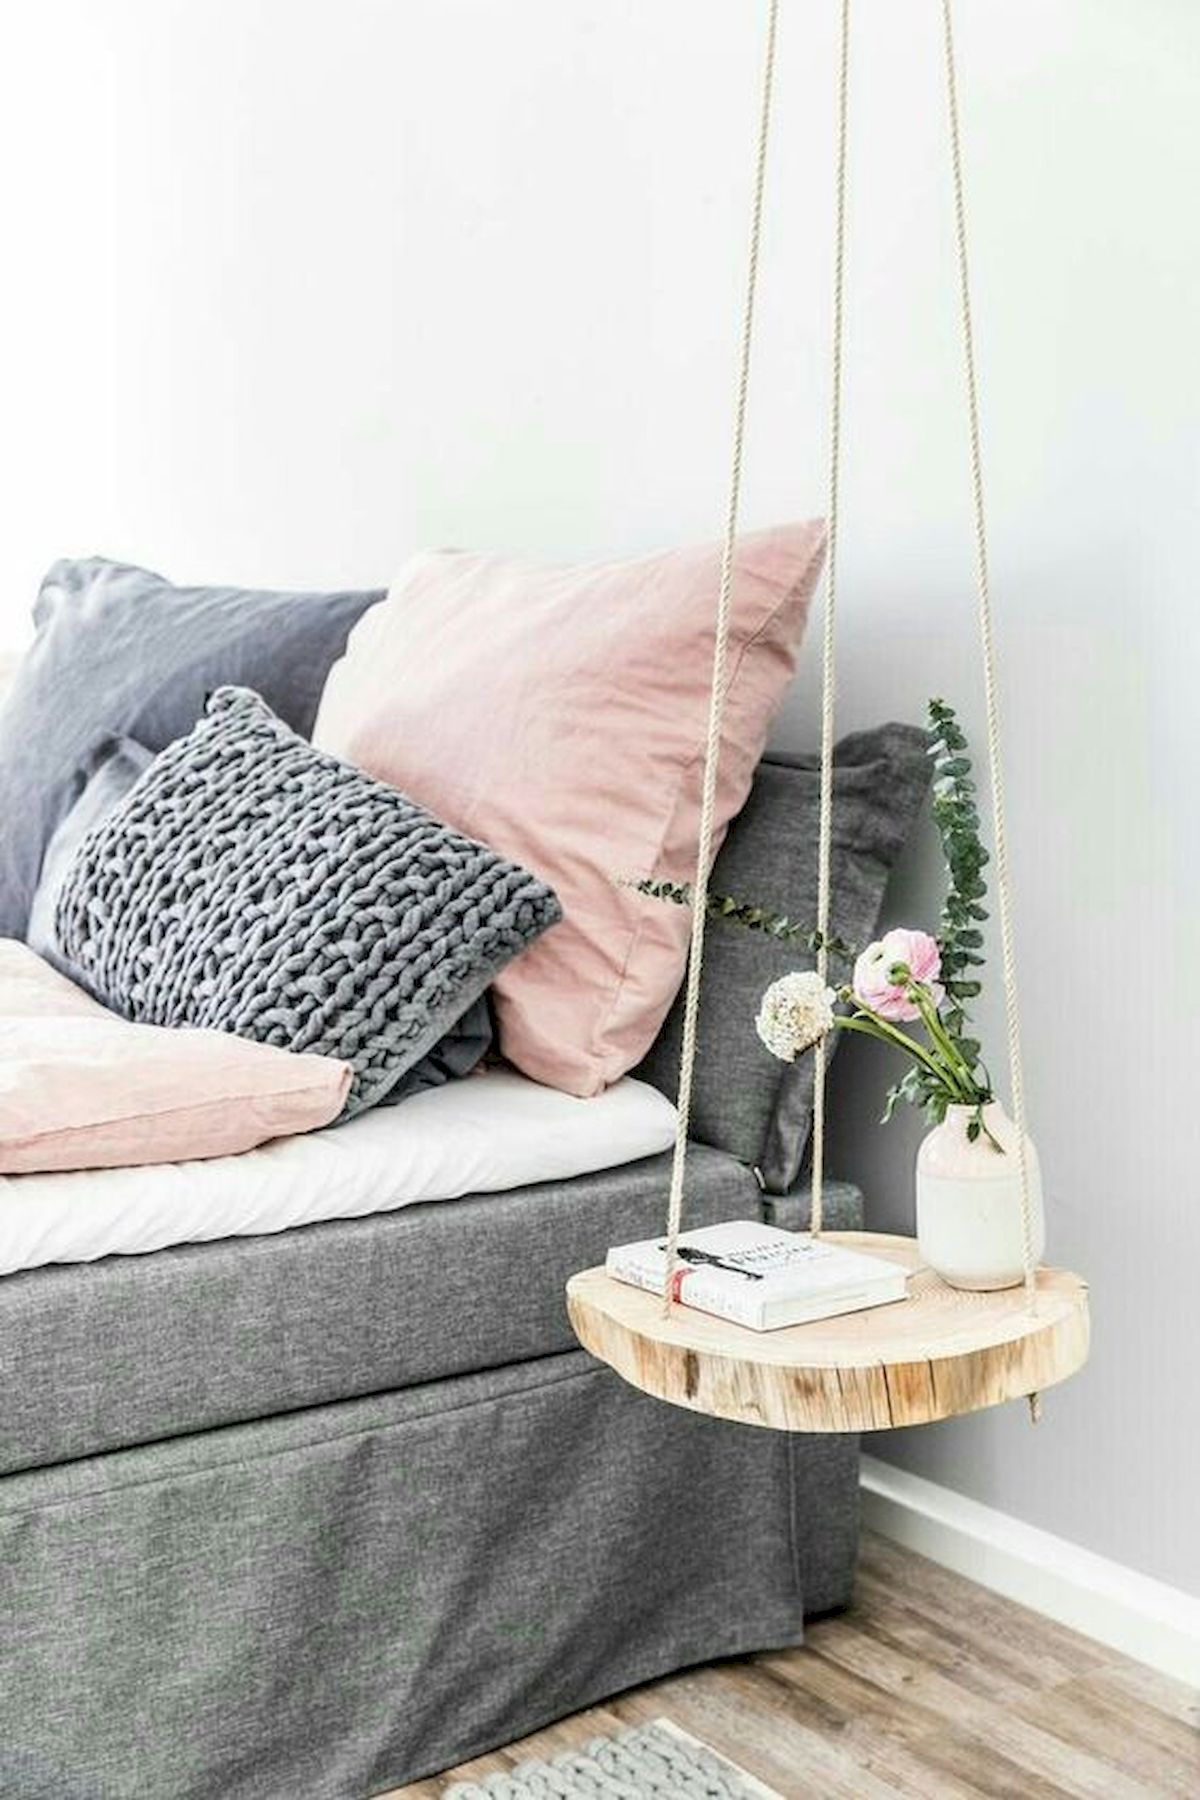 70 Favorite DIY Projects Furniture Bedroom Design Ideas -   16 diy projects Decoration bedrooms ideas